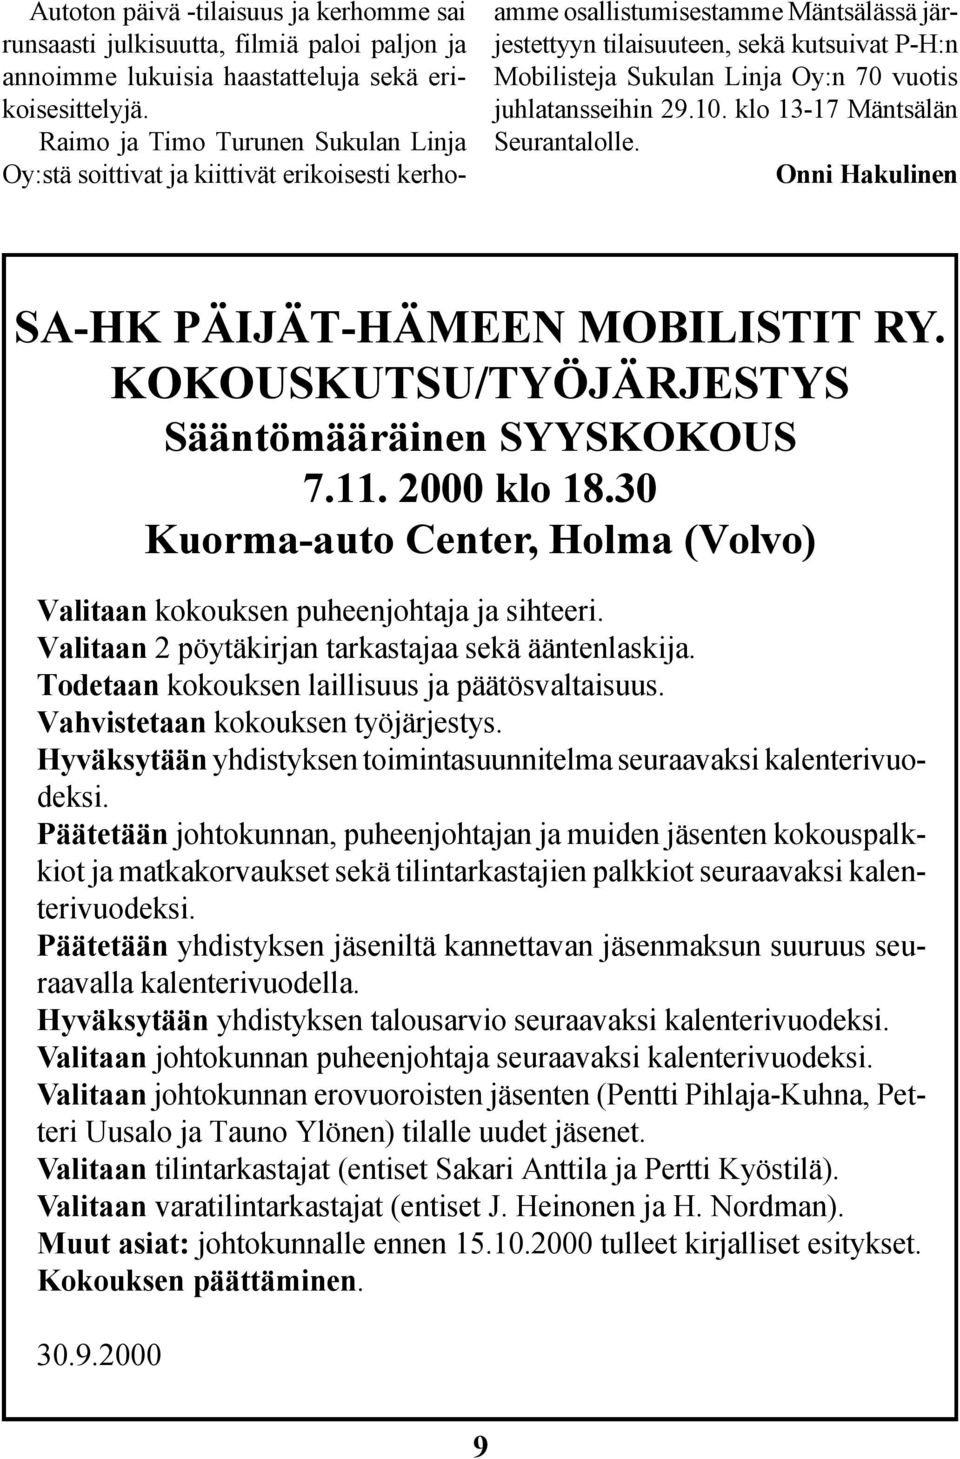 70 vuotis juhlatansseihin 29.10. klo 13-17 Mäntsälän Seurantalolle. Onni Hakulinen SA-HK PÄIJÄT-HÄMEEN MOBILISTIT RY. KOKOUSKUTSU/TYÖJÄRJESTYS Sääntömääräinen SYYSKOKOUS 7.11. 2000 klo 18.